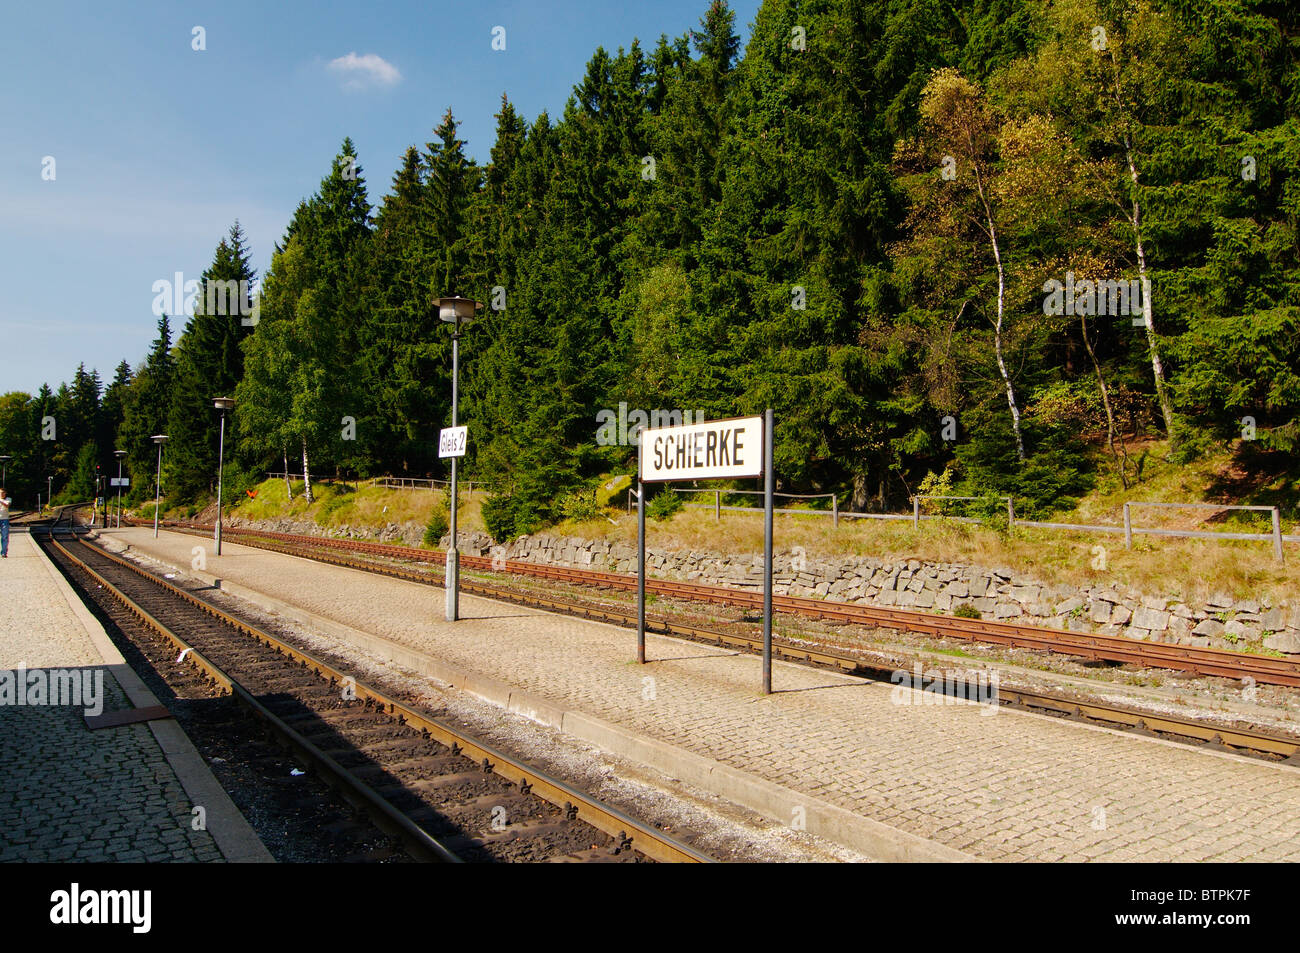 Germany, Harz Mountains, Schierke railway station Stock Photo